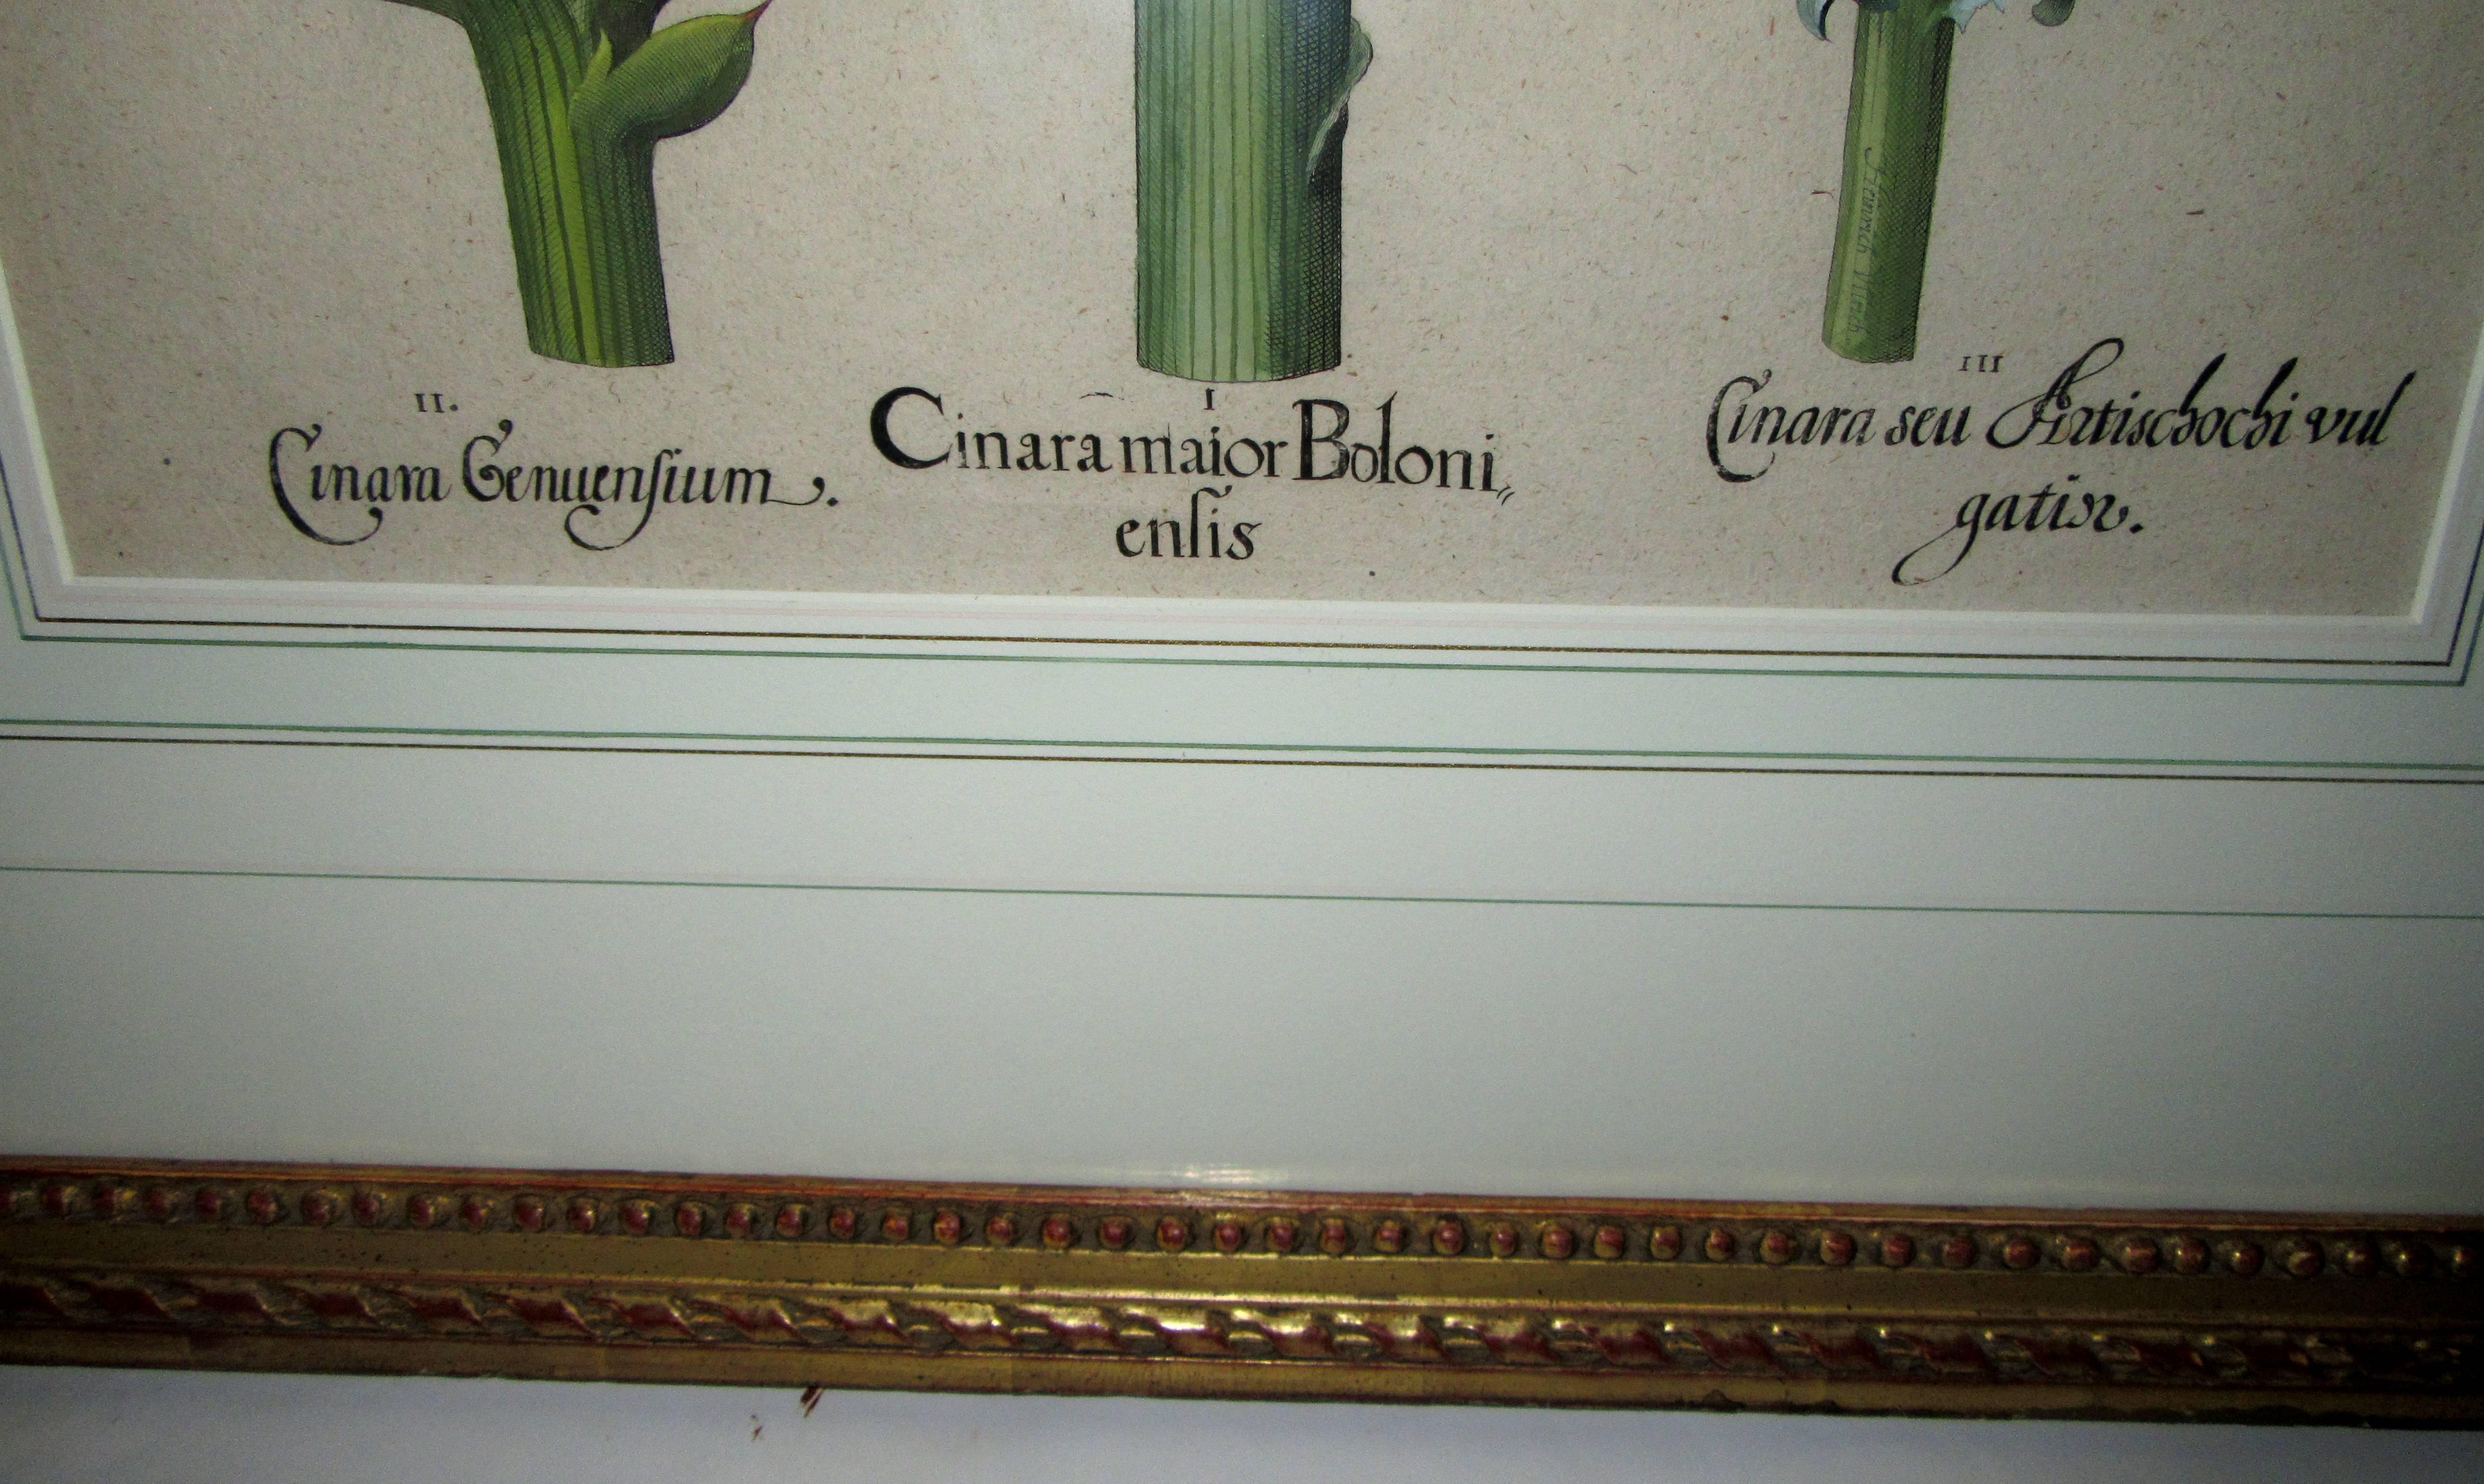 Ein handkolorierter Kupferstich aus einem der größten botanischen Bildbände aller Zeiten, dem Hortus Eystettensis. Veröffentlicht in Eichstatt, Deutschland. Gezeichnet aus den Gärten von Johann Konrad von Gemmingen, Bischof von Eichstatt. Gerahmt in